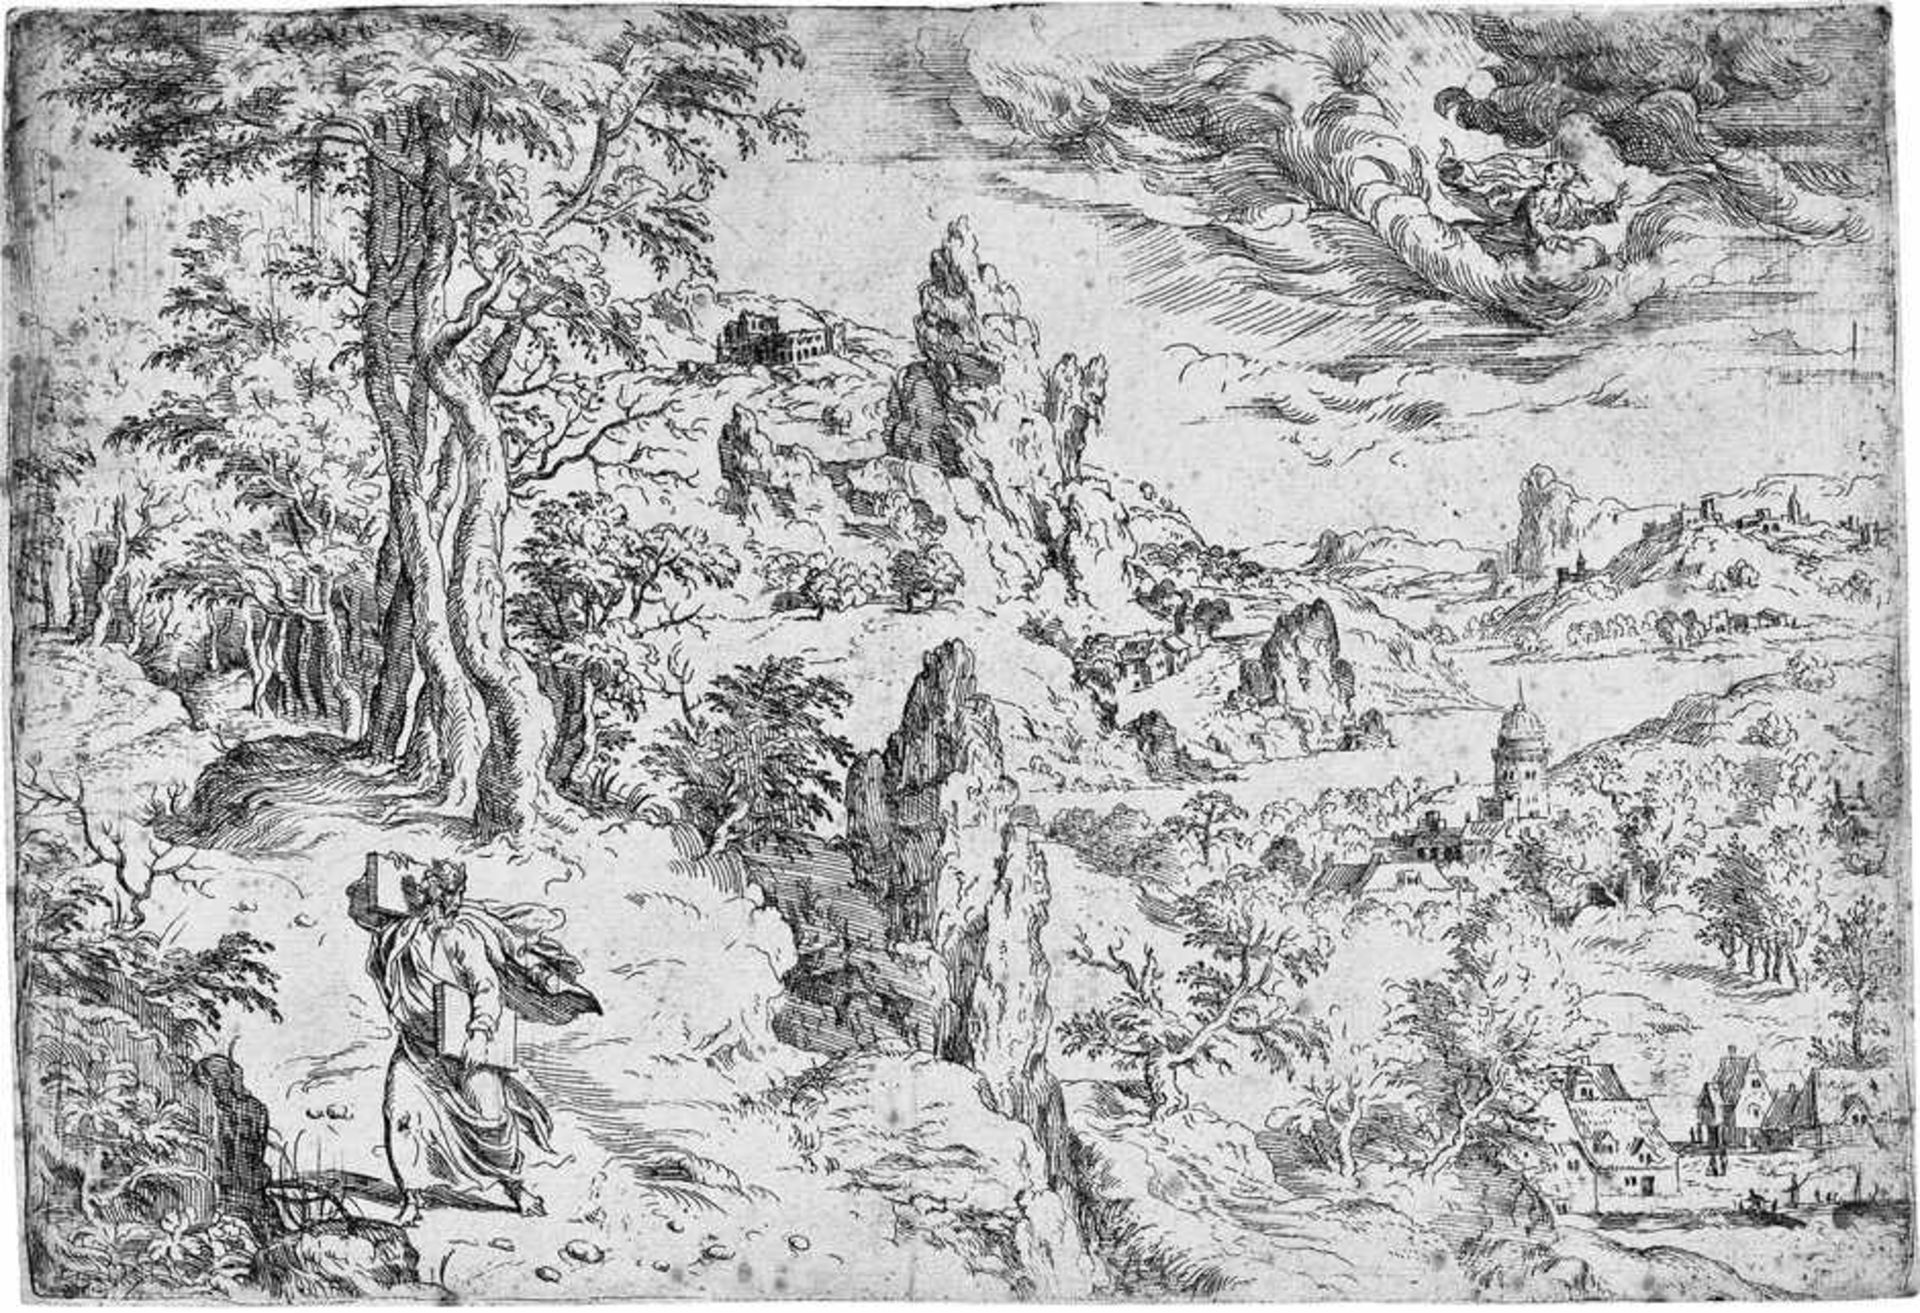 Cock, Hieronymus: Landschaft mit Moses Landschaft mit Moses und den Gesetzestafeln. Radierung. 19,